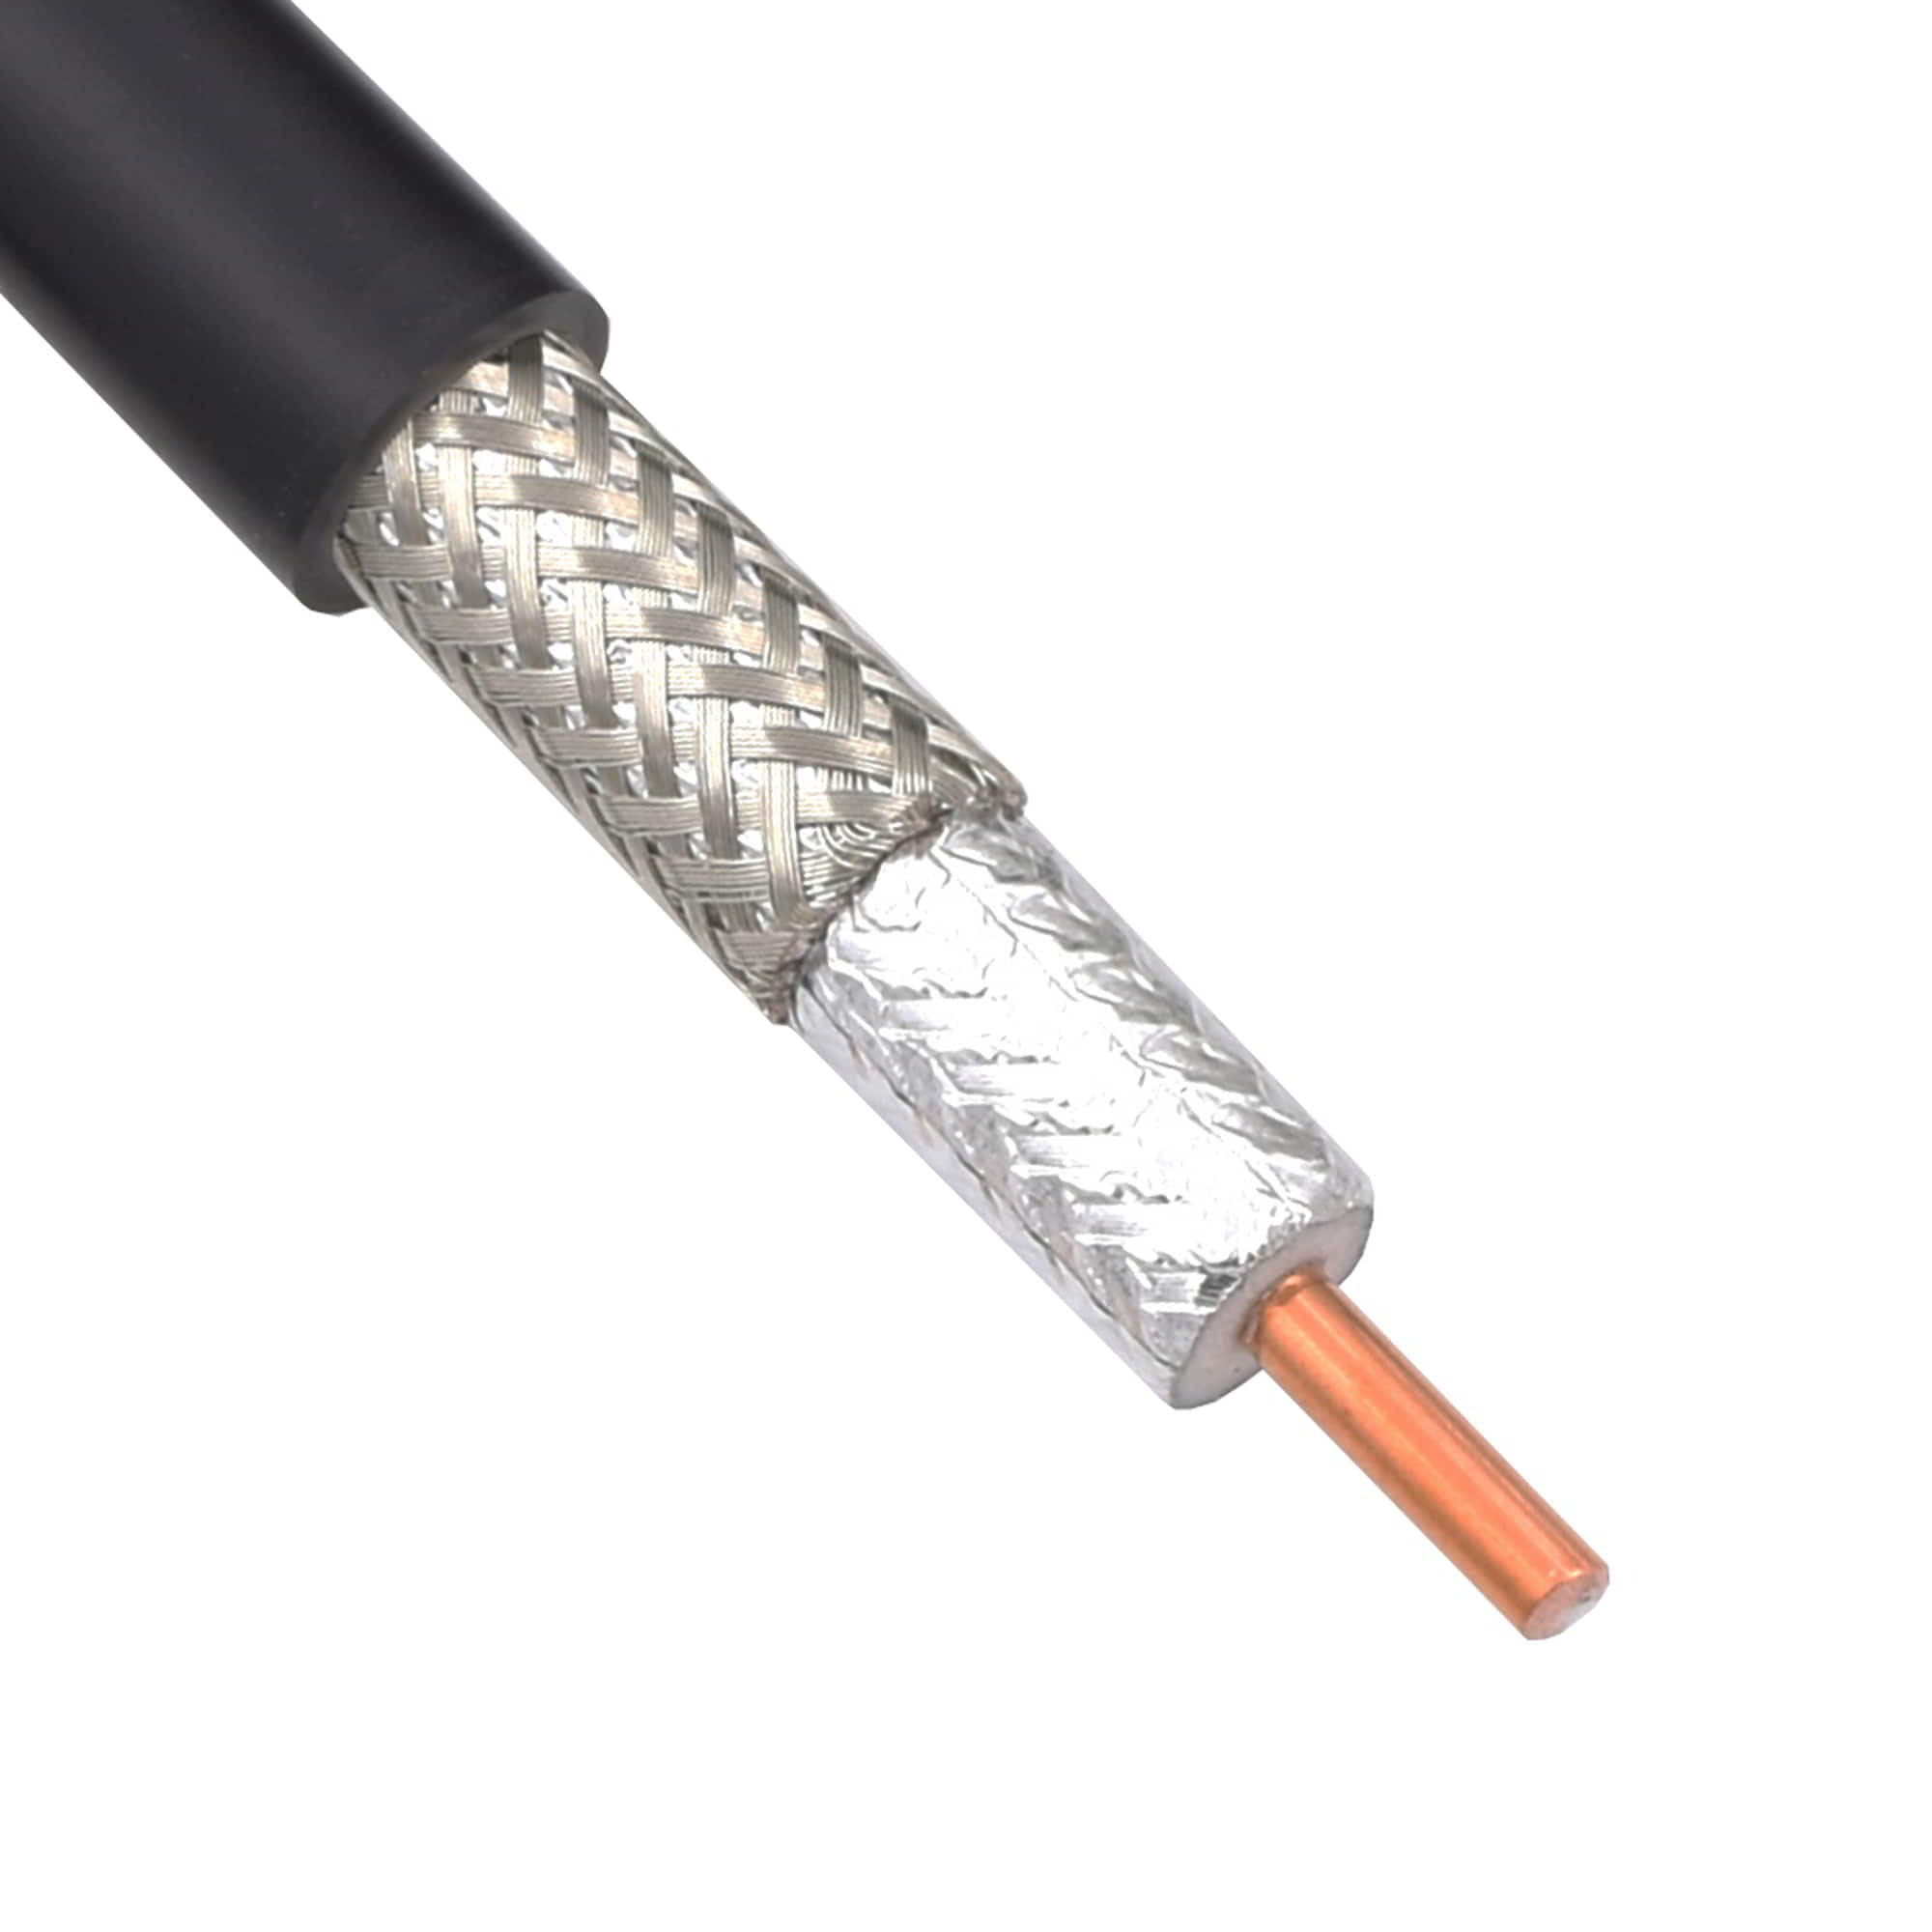 8D-FB Coaxial Cable, CCA conductor, LSZH jacket